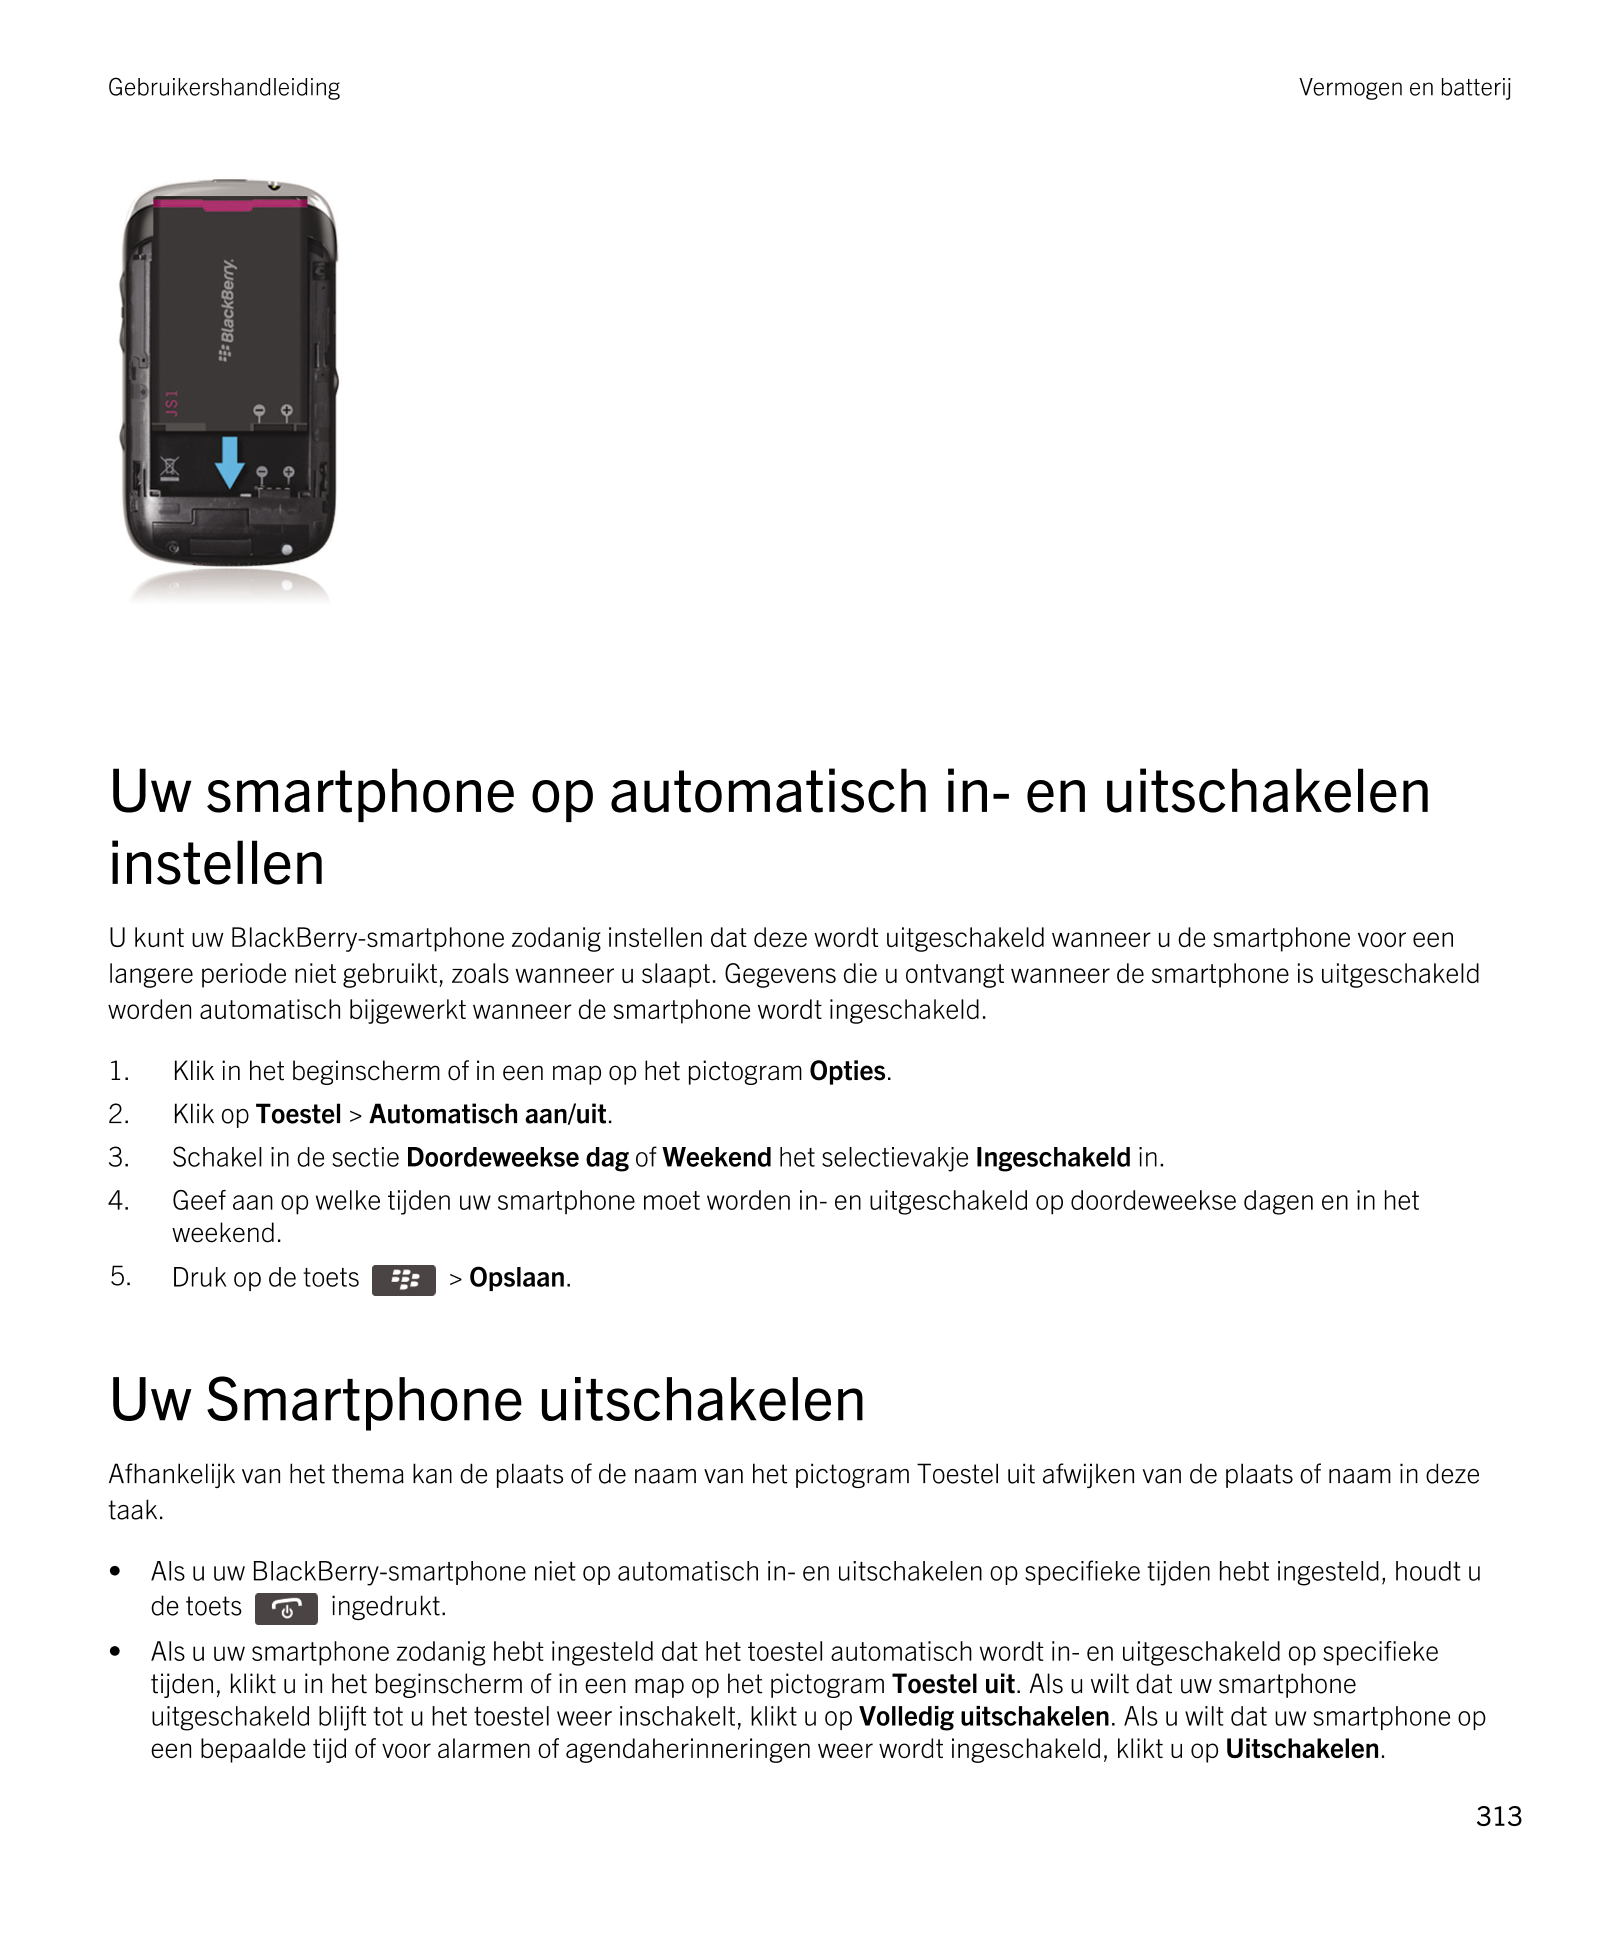 Gebruikershandleiding Vermogen en batterij
Uw smartphone op automatisch in- en uitschakelen 
instellen
U kunt uw  BlackBerry-sma